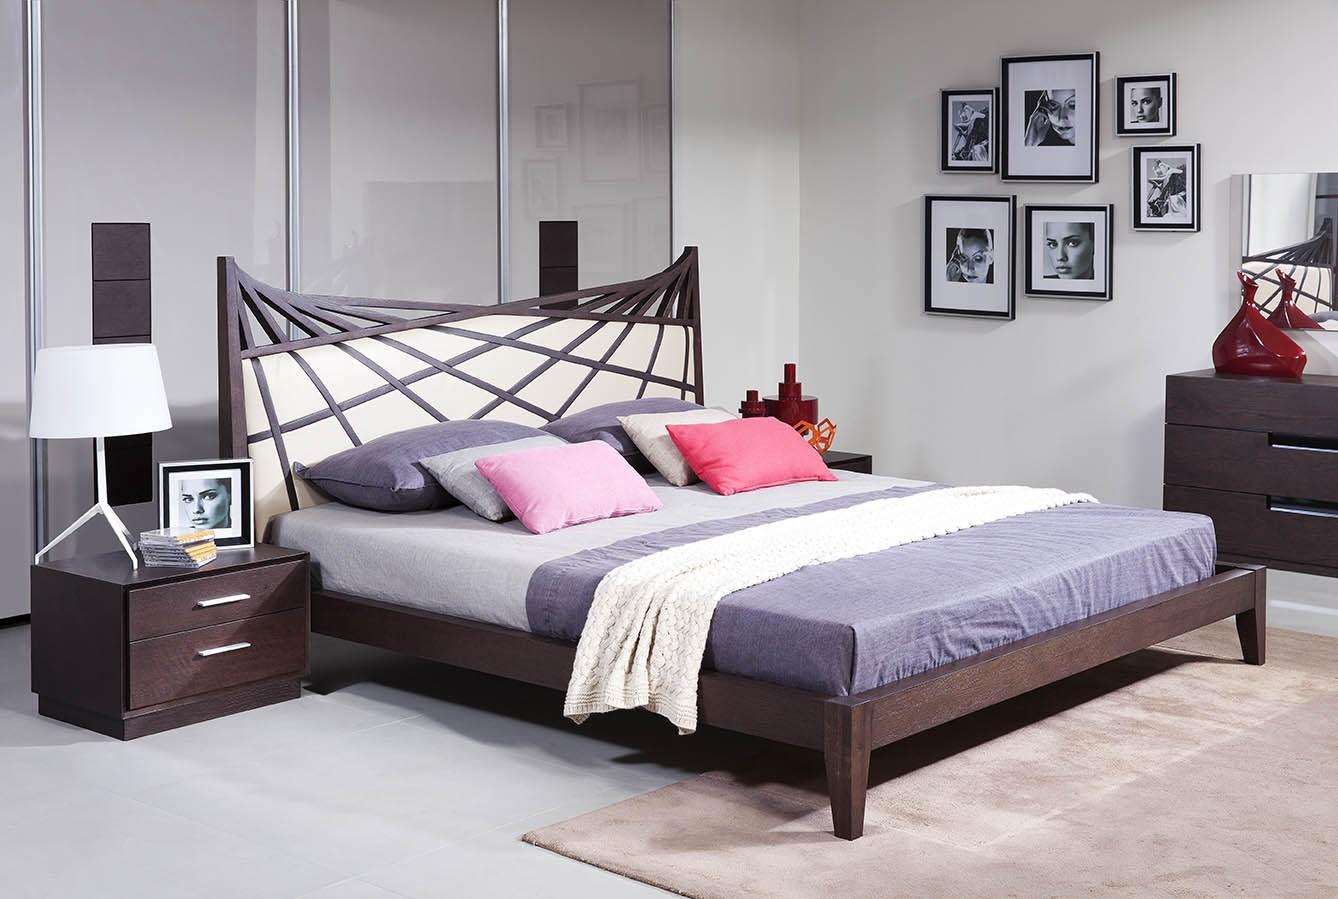 

    
VIG Modrest Prism Modern Brown & Beige Bonded Leather Queen Platform Bedroom Set 3Pcs
